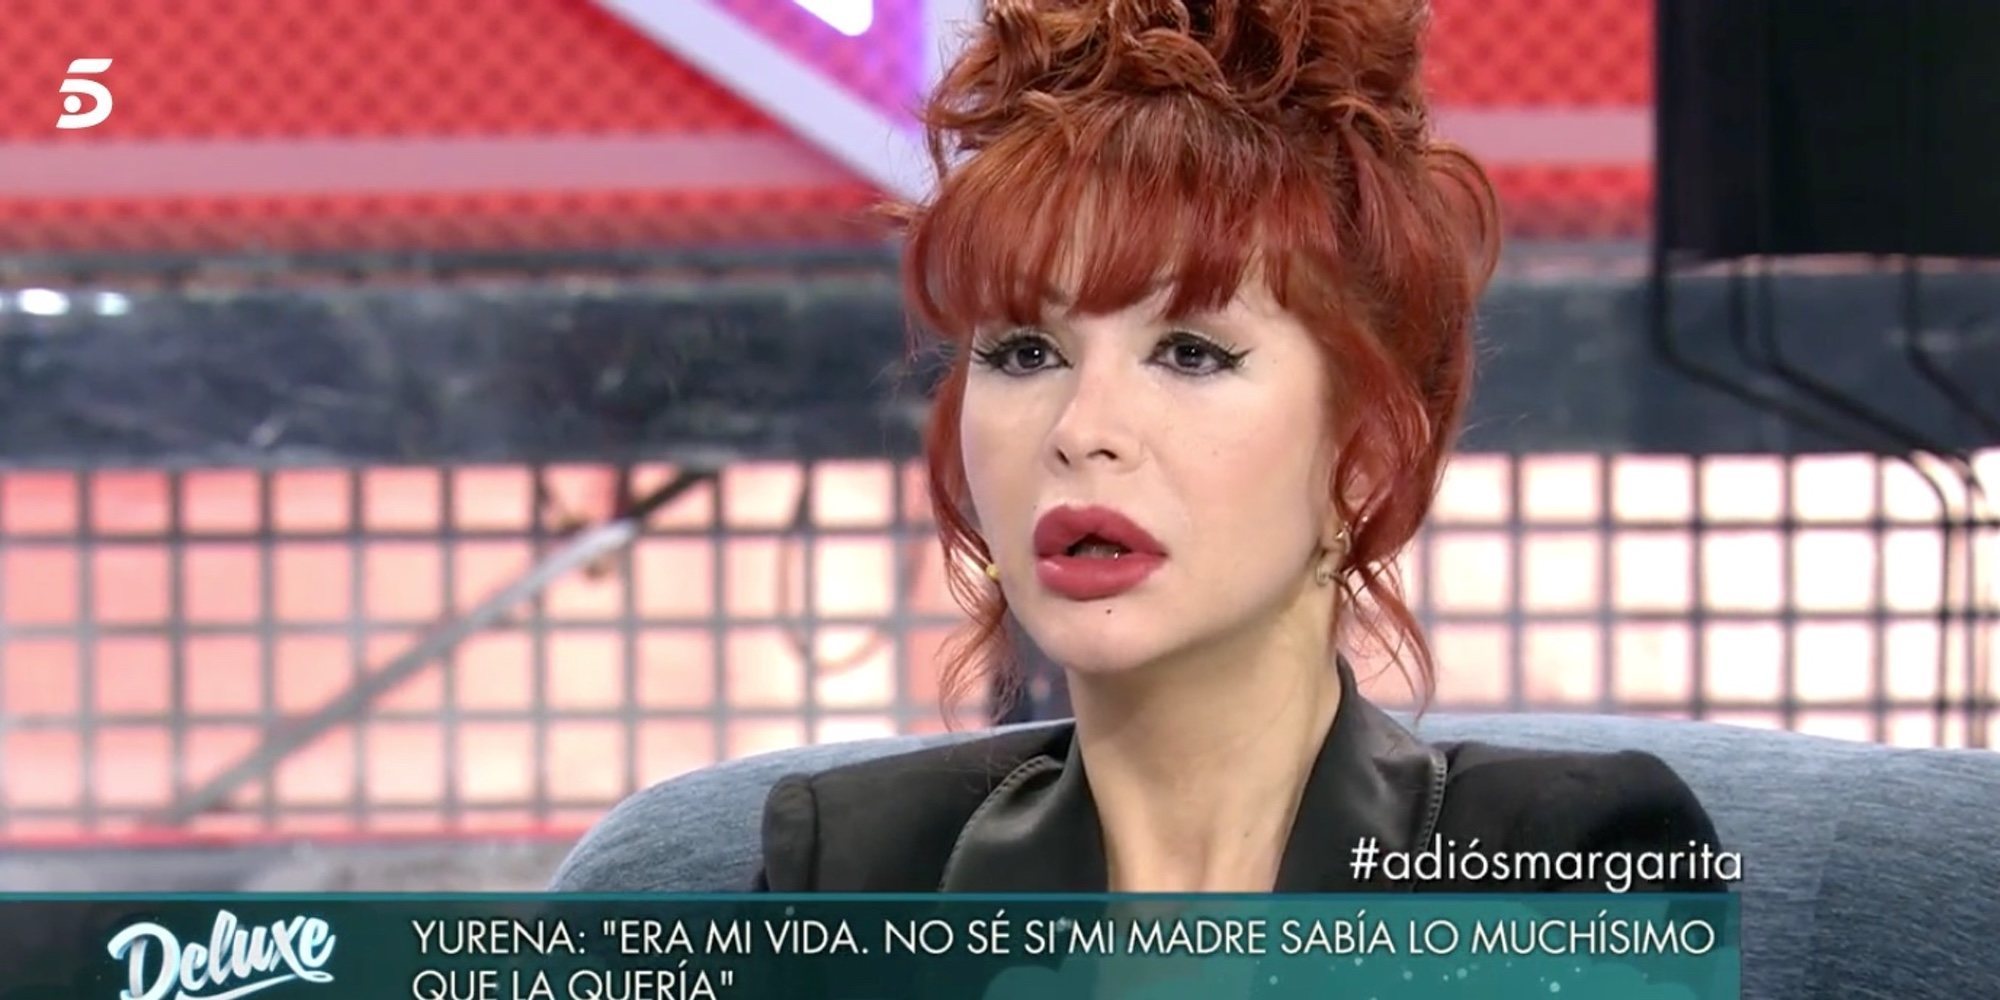 Yurena, destrozada por la muerte de Margarita Seisdedos, agradece el apoyo de Isabel Pantoja: "Me hizo llorar"